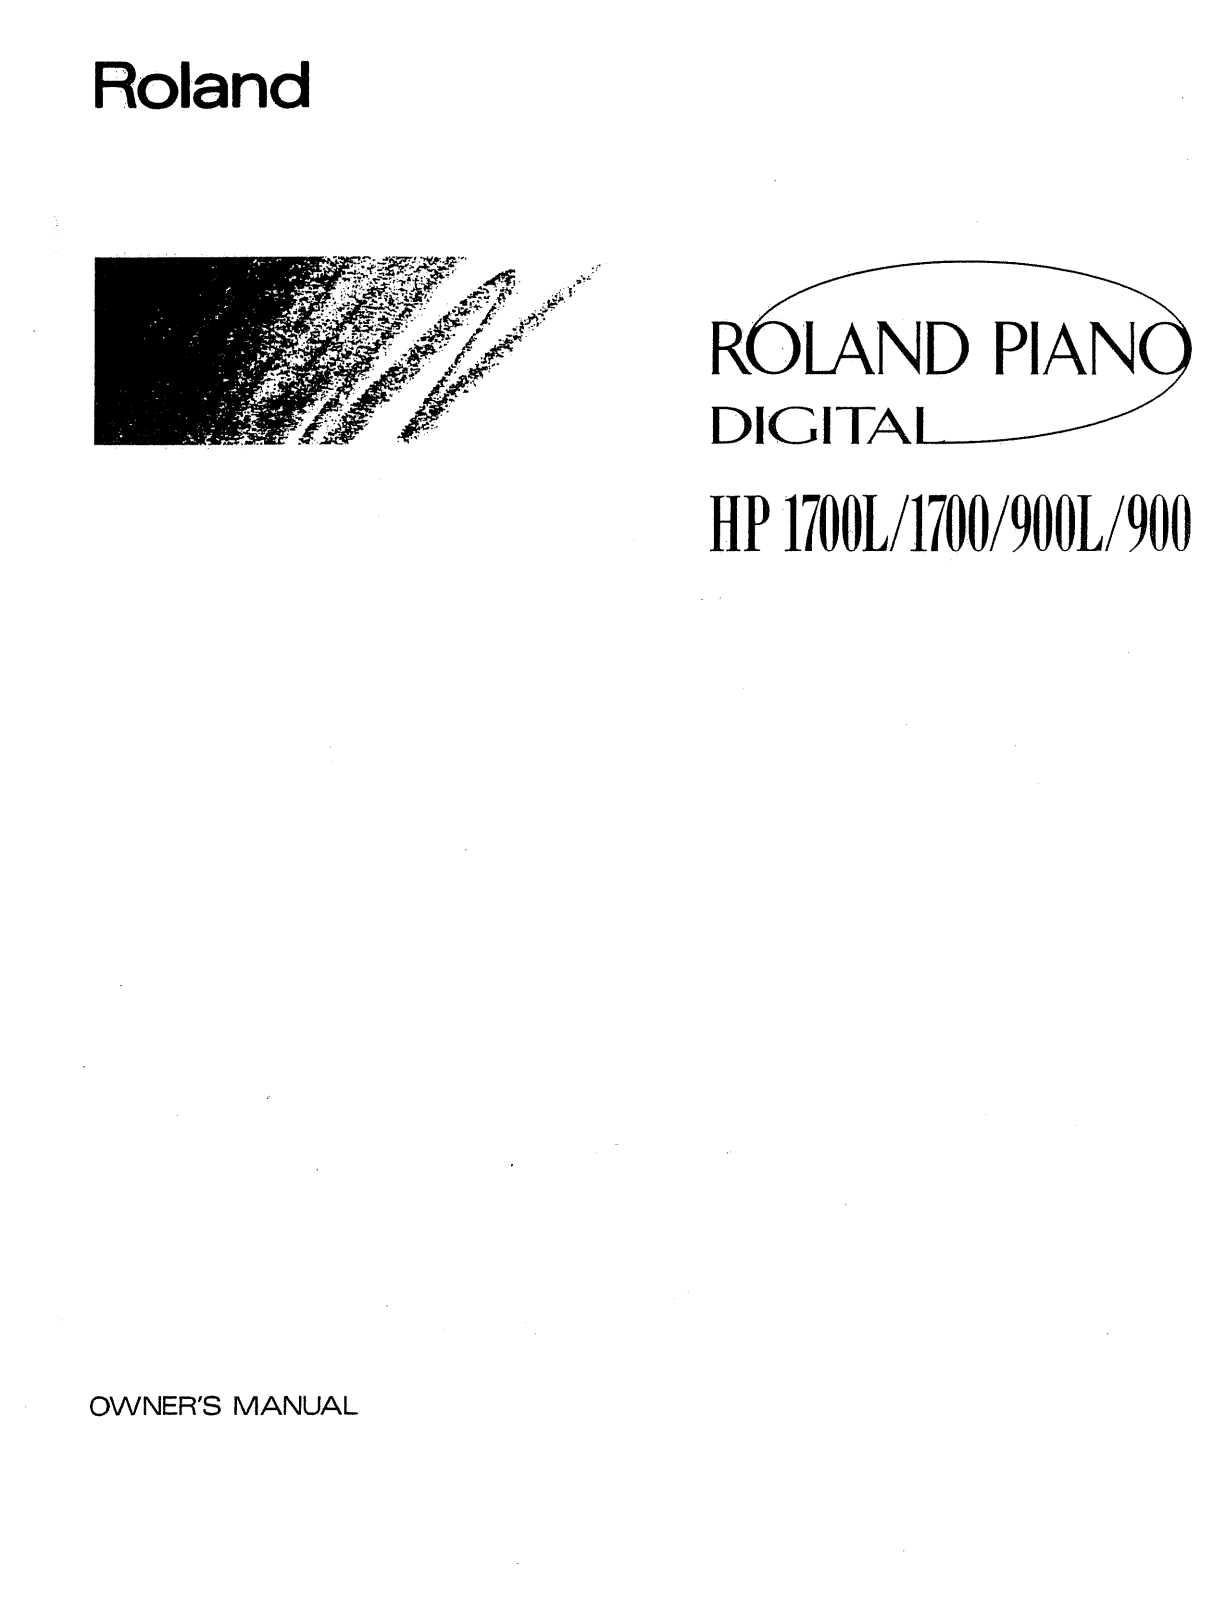 Roland HP 1700L, HP 1700, HP 1900 Service Manual